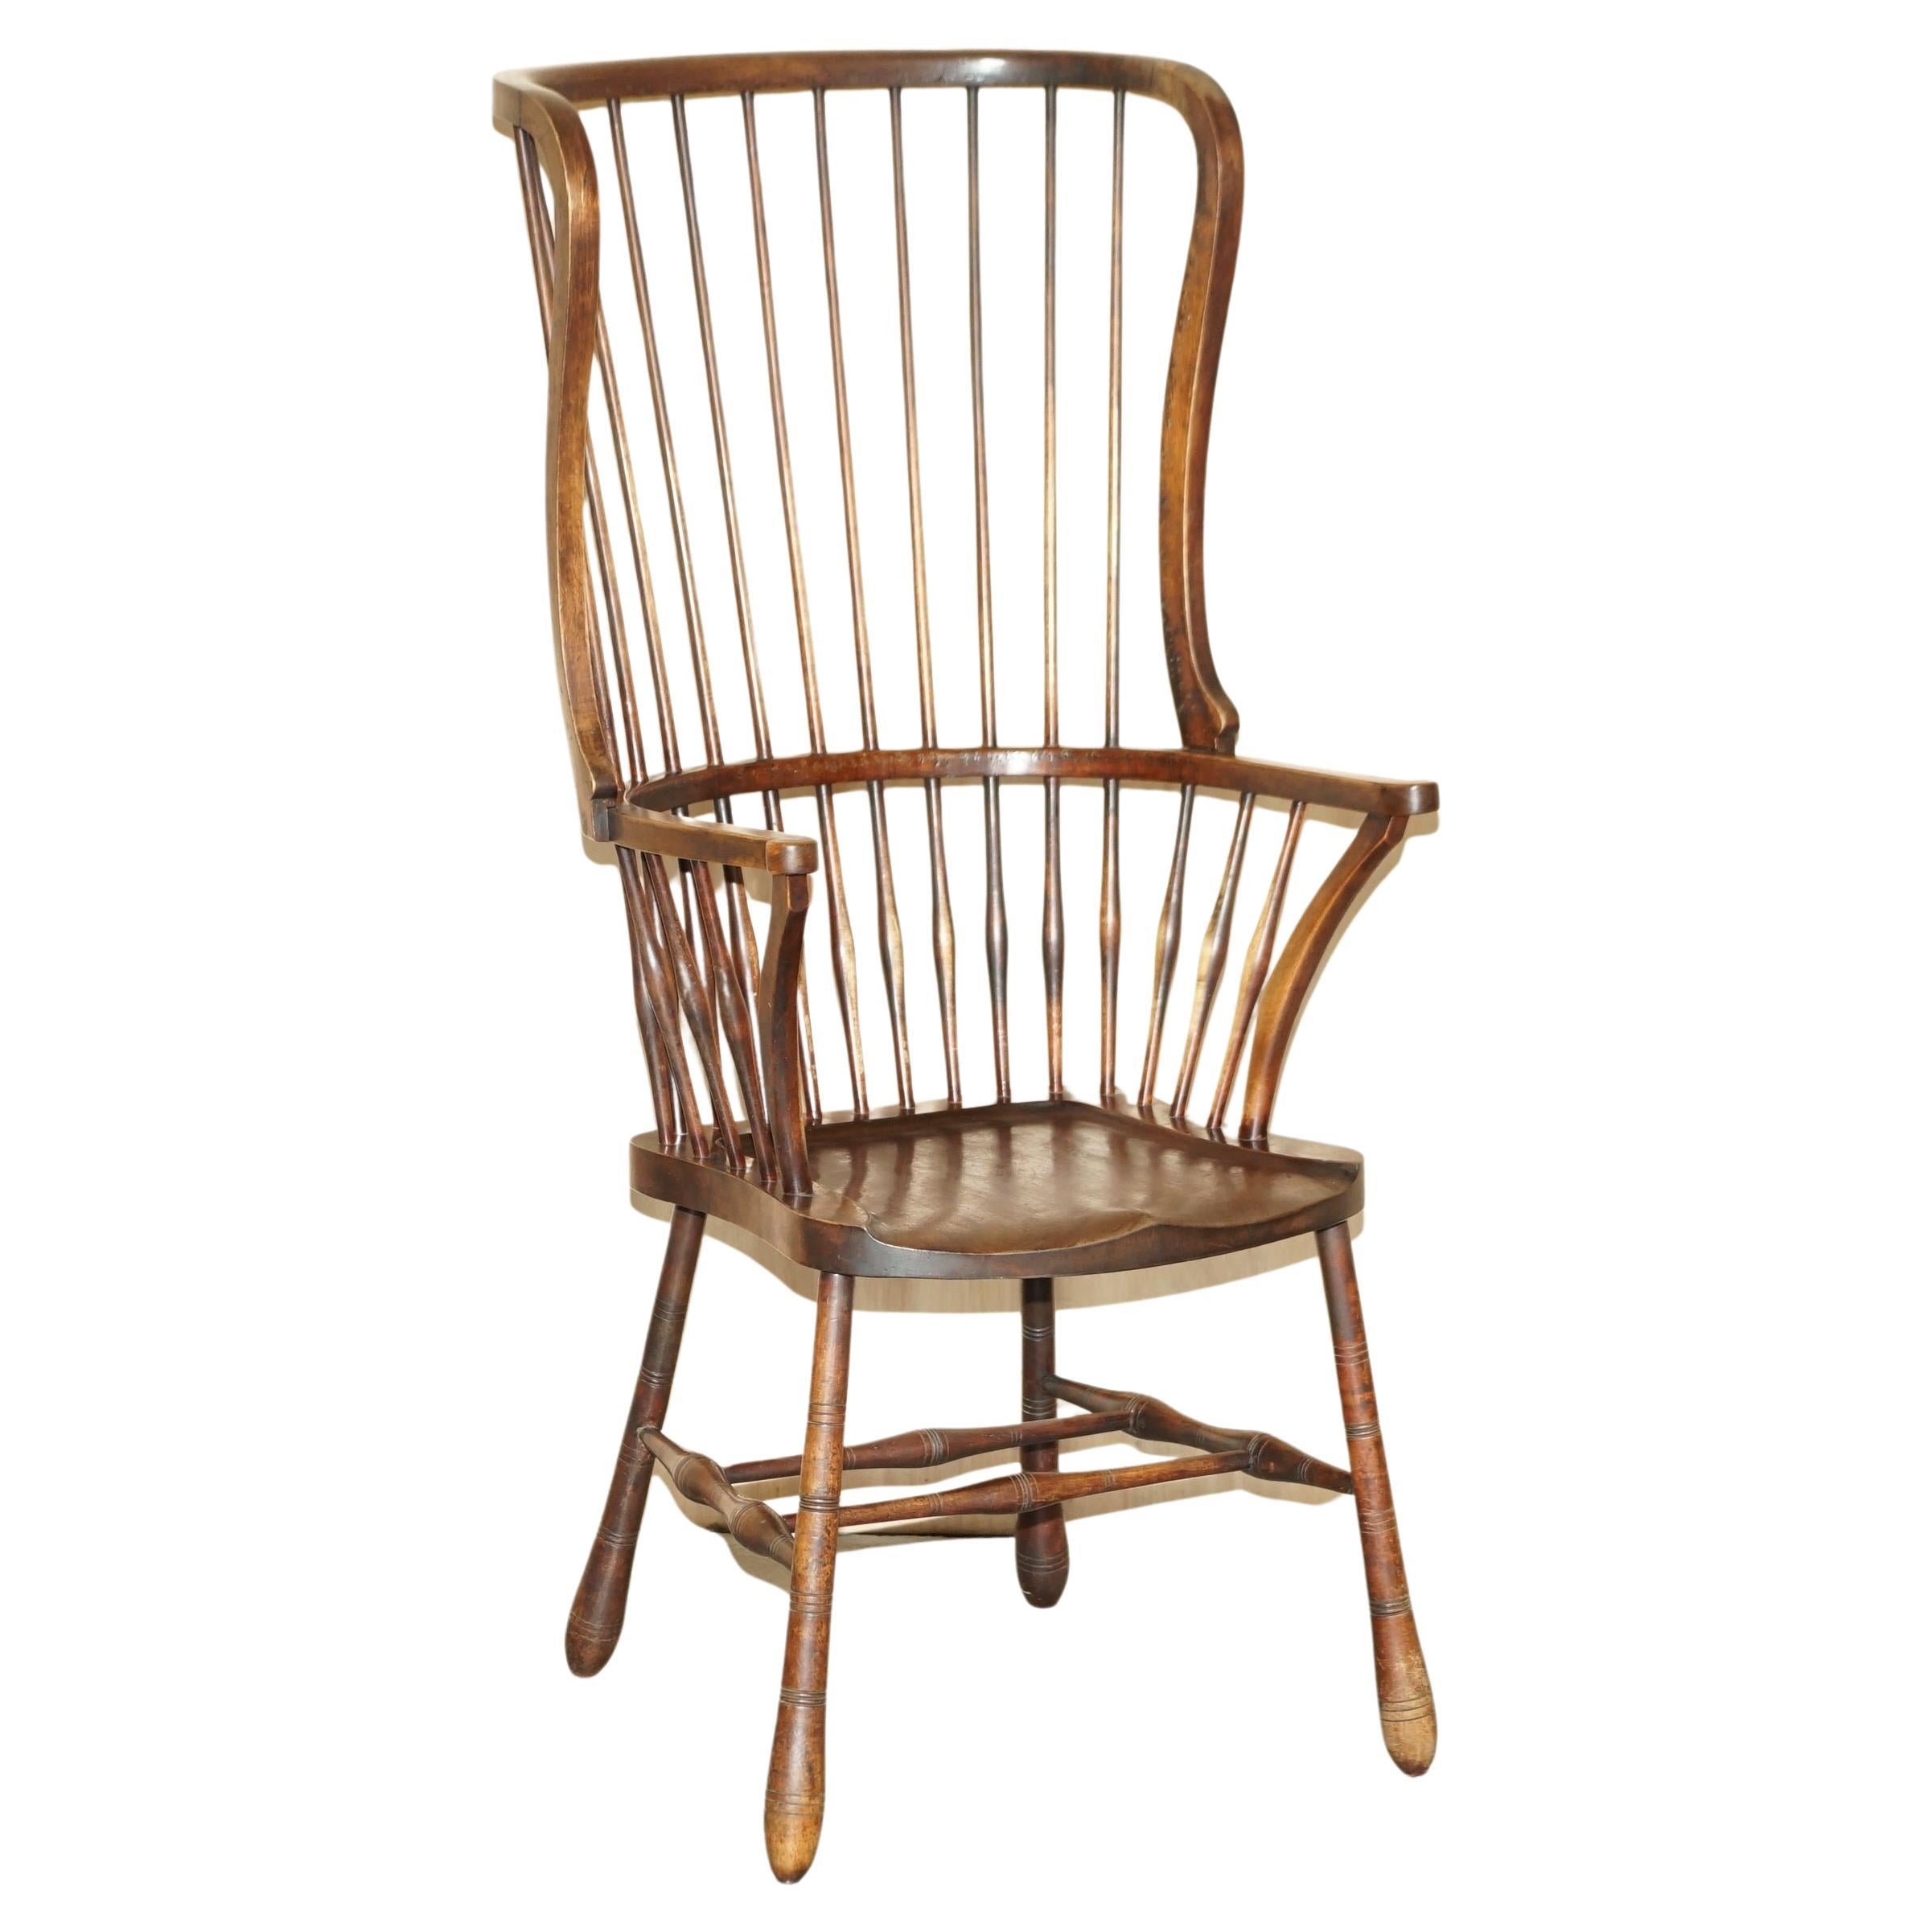 Très rare et important fauteuil Wingback Windsor Spindle du 19ème siècle en frêne